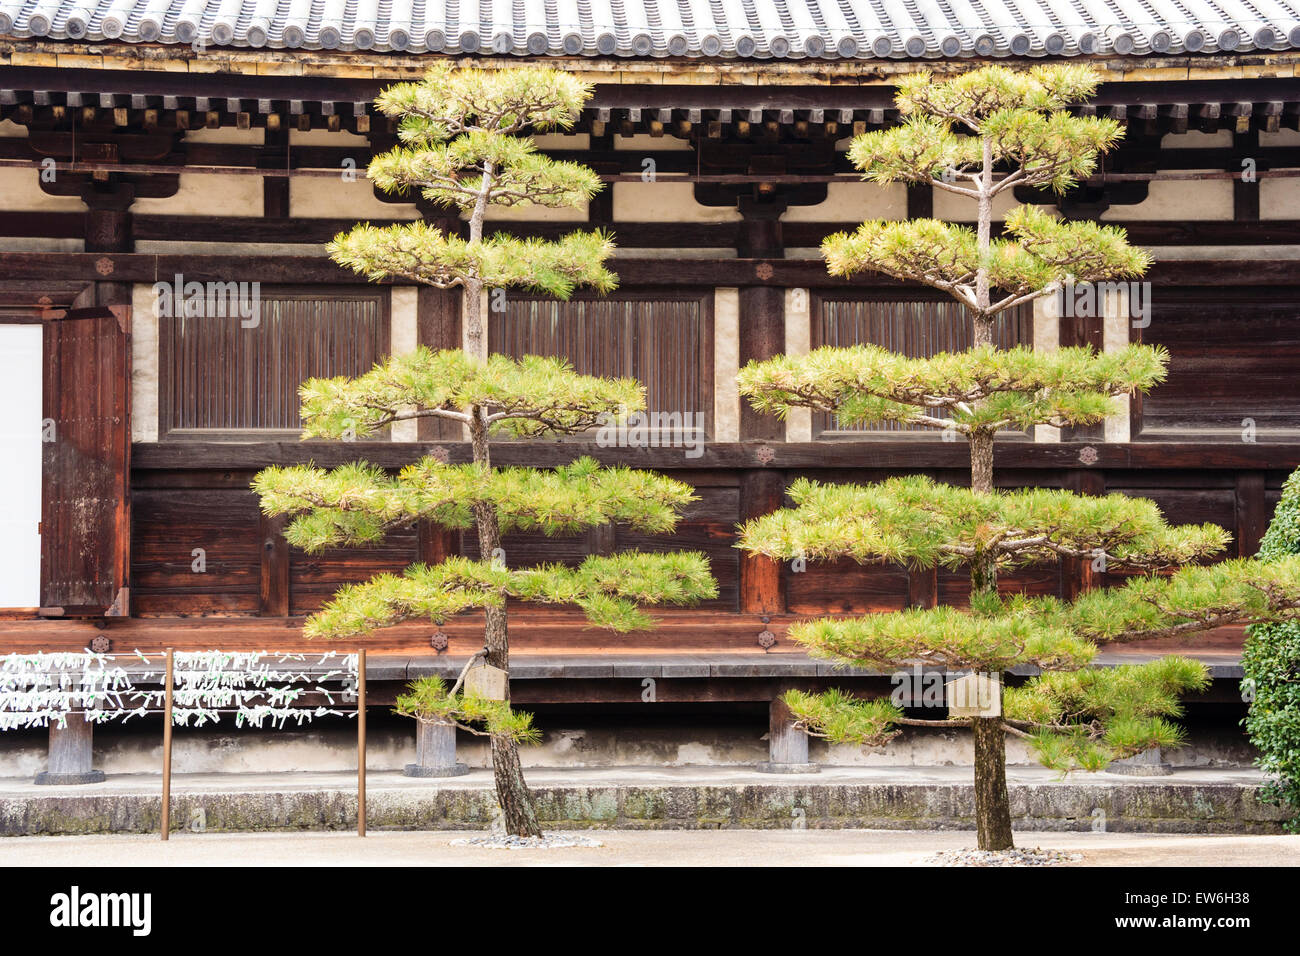 Japon, Kyoto. Temple de Sanjusangen-do. Partie de la grande salle en bois avec deux arbres japonais en face Banque D'Images